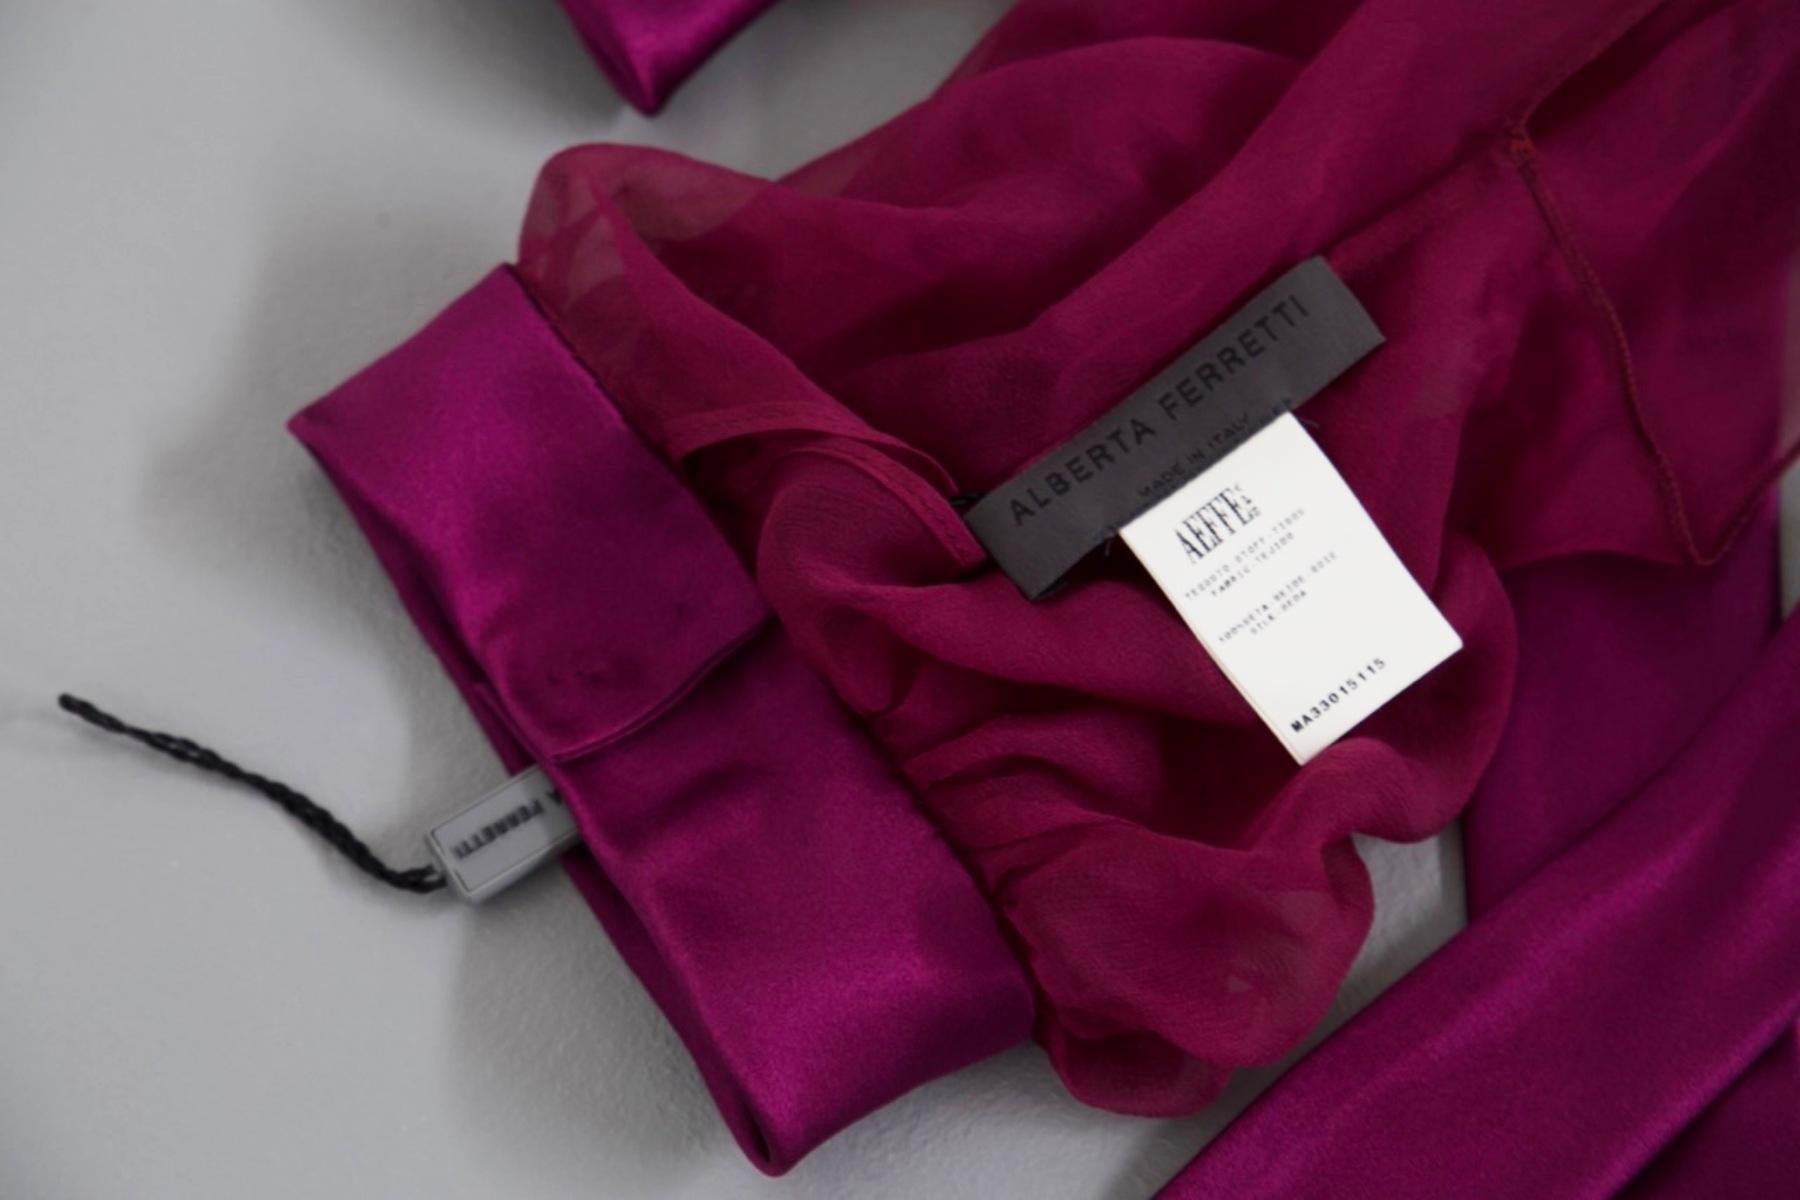 Magnifique housse d'épaule violette conçue par Alberta Ferretti dans les années 1990, belle fabrication italienne.
ÉTIQUETTE ORIGINALE.
La housse d'épaule est faite d'un tissu très doux, couleur violette éclectique, spectaculaire.
il se resserre